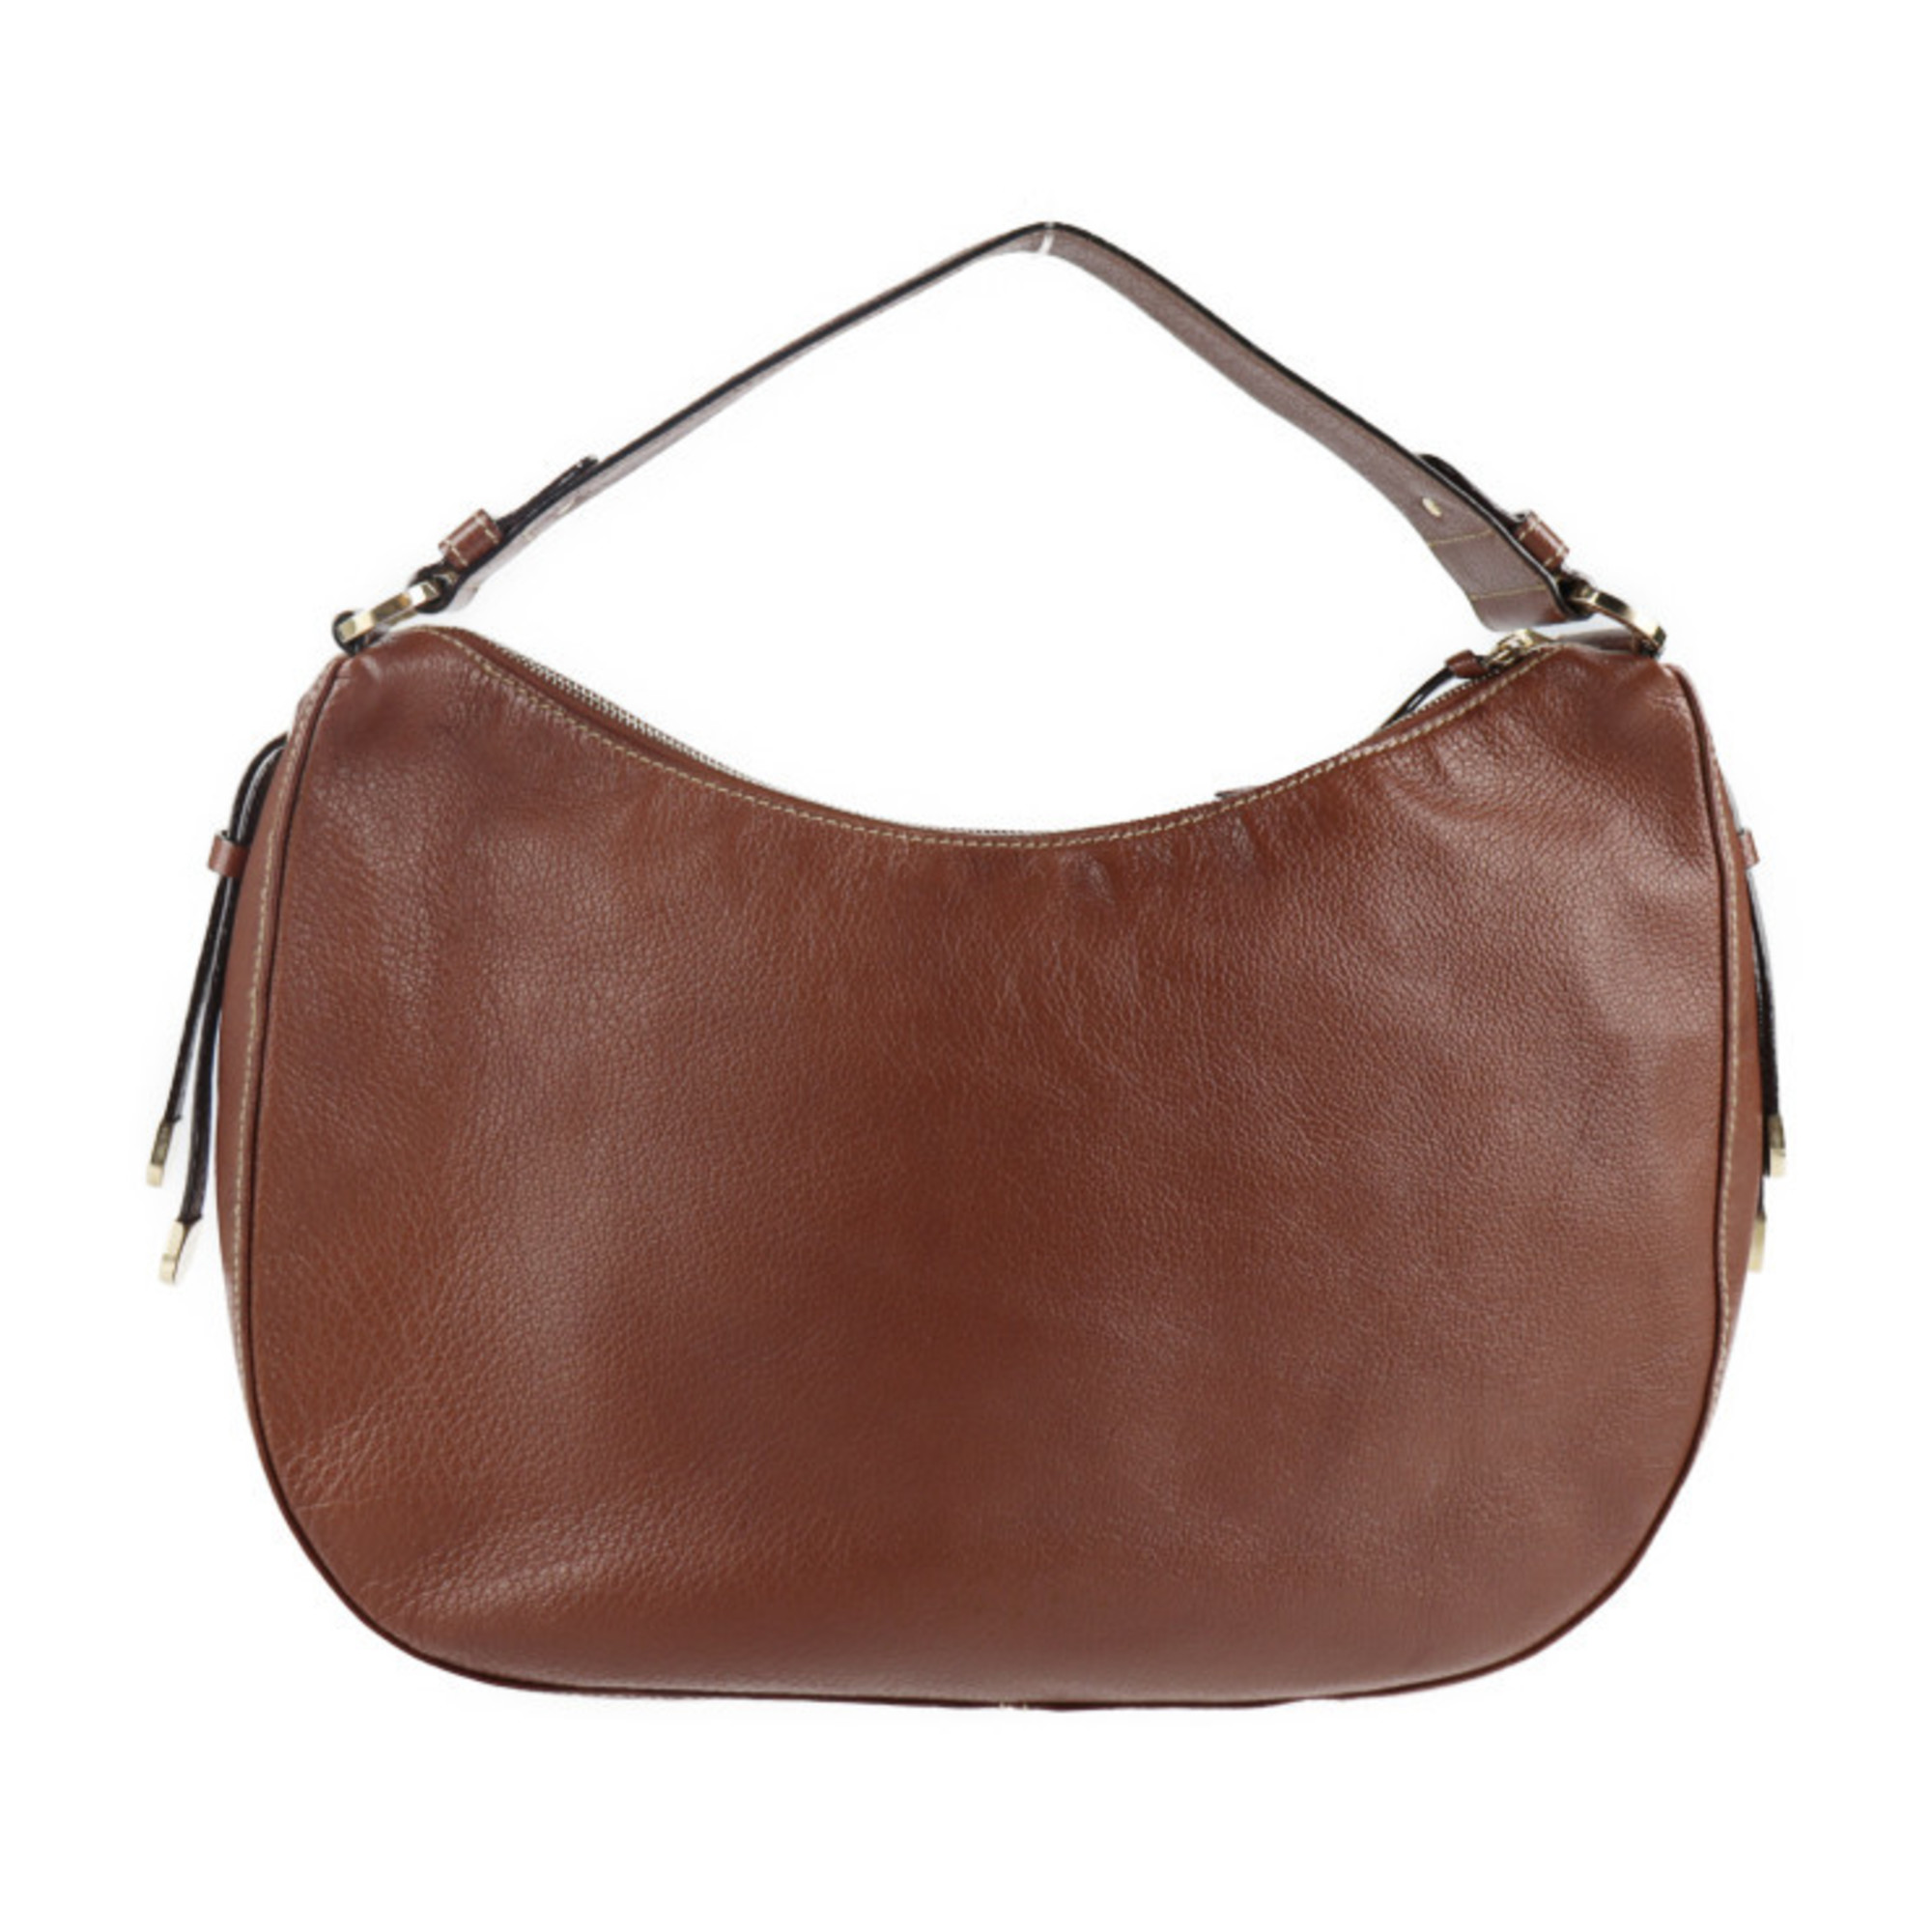 BVLGARI Bvlgari Malta shoulder bag leather brown handbag